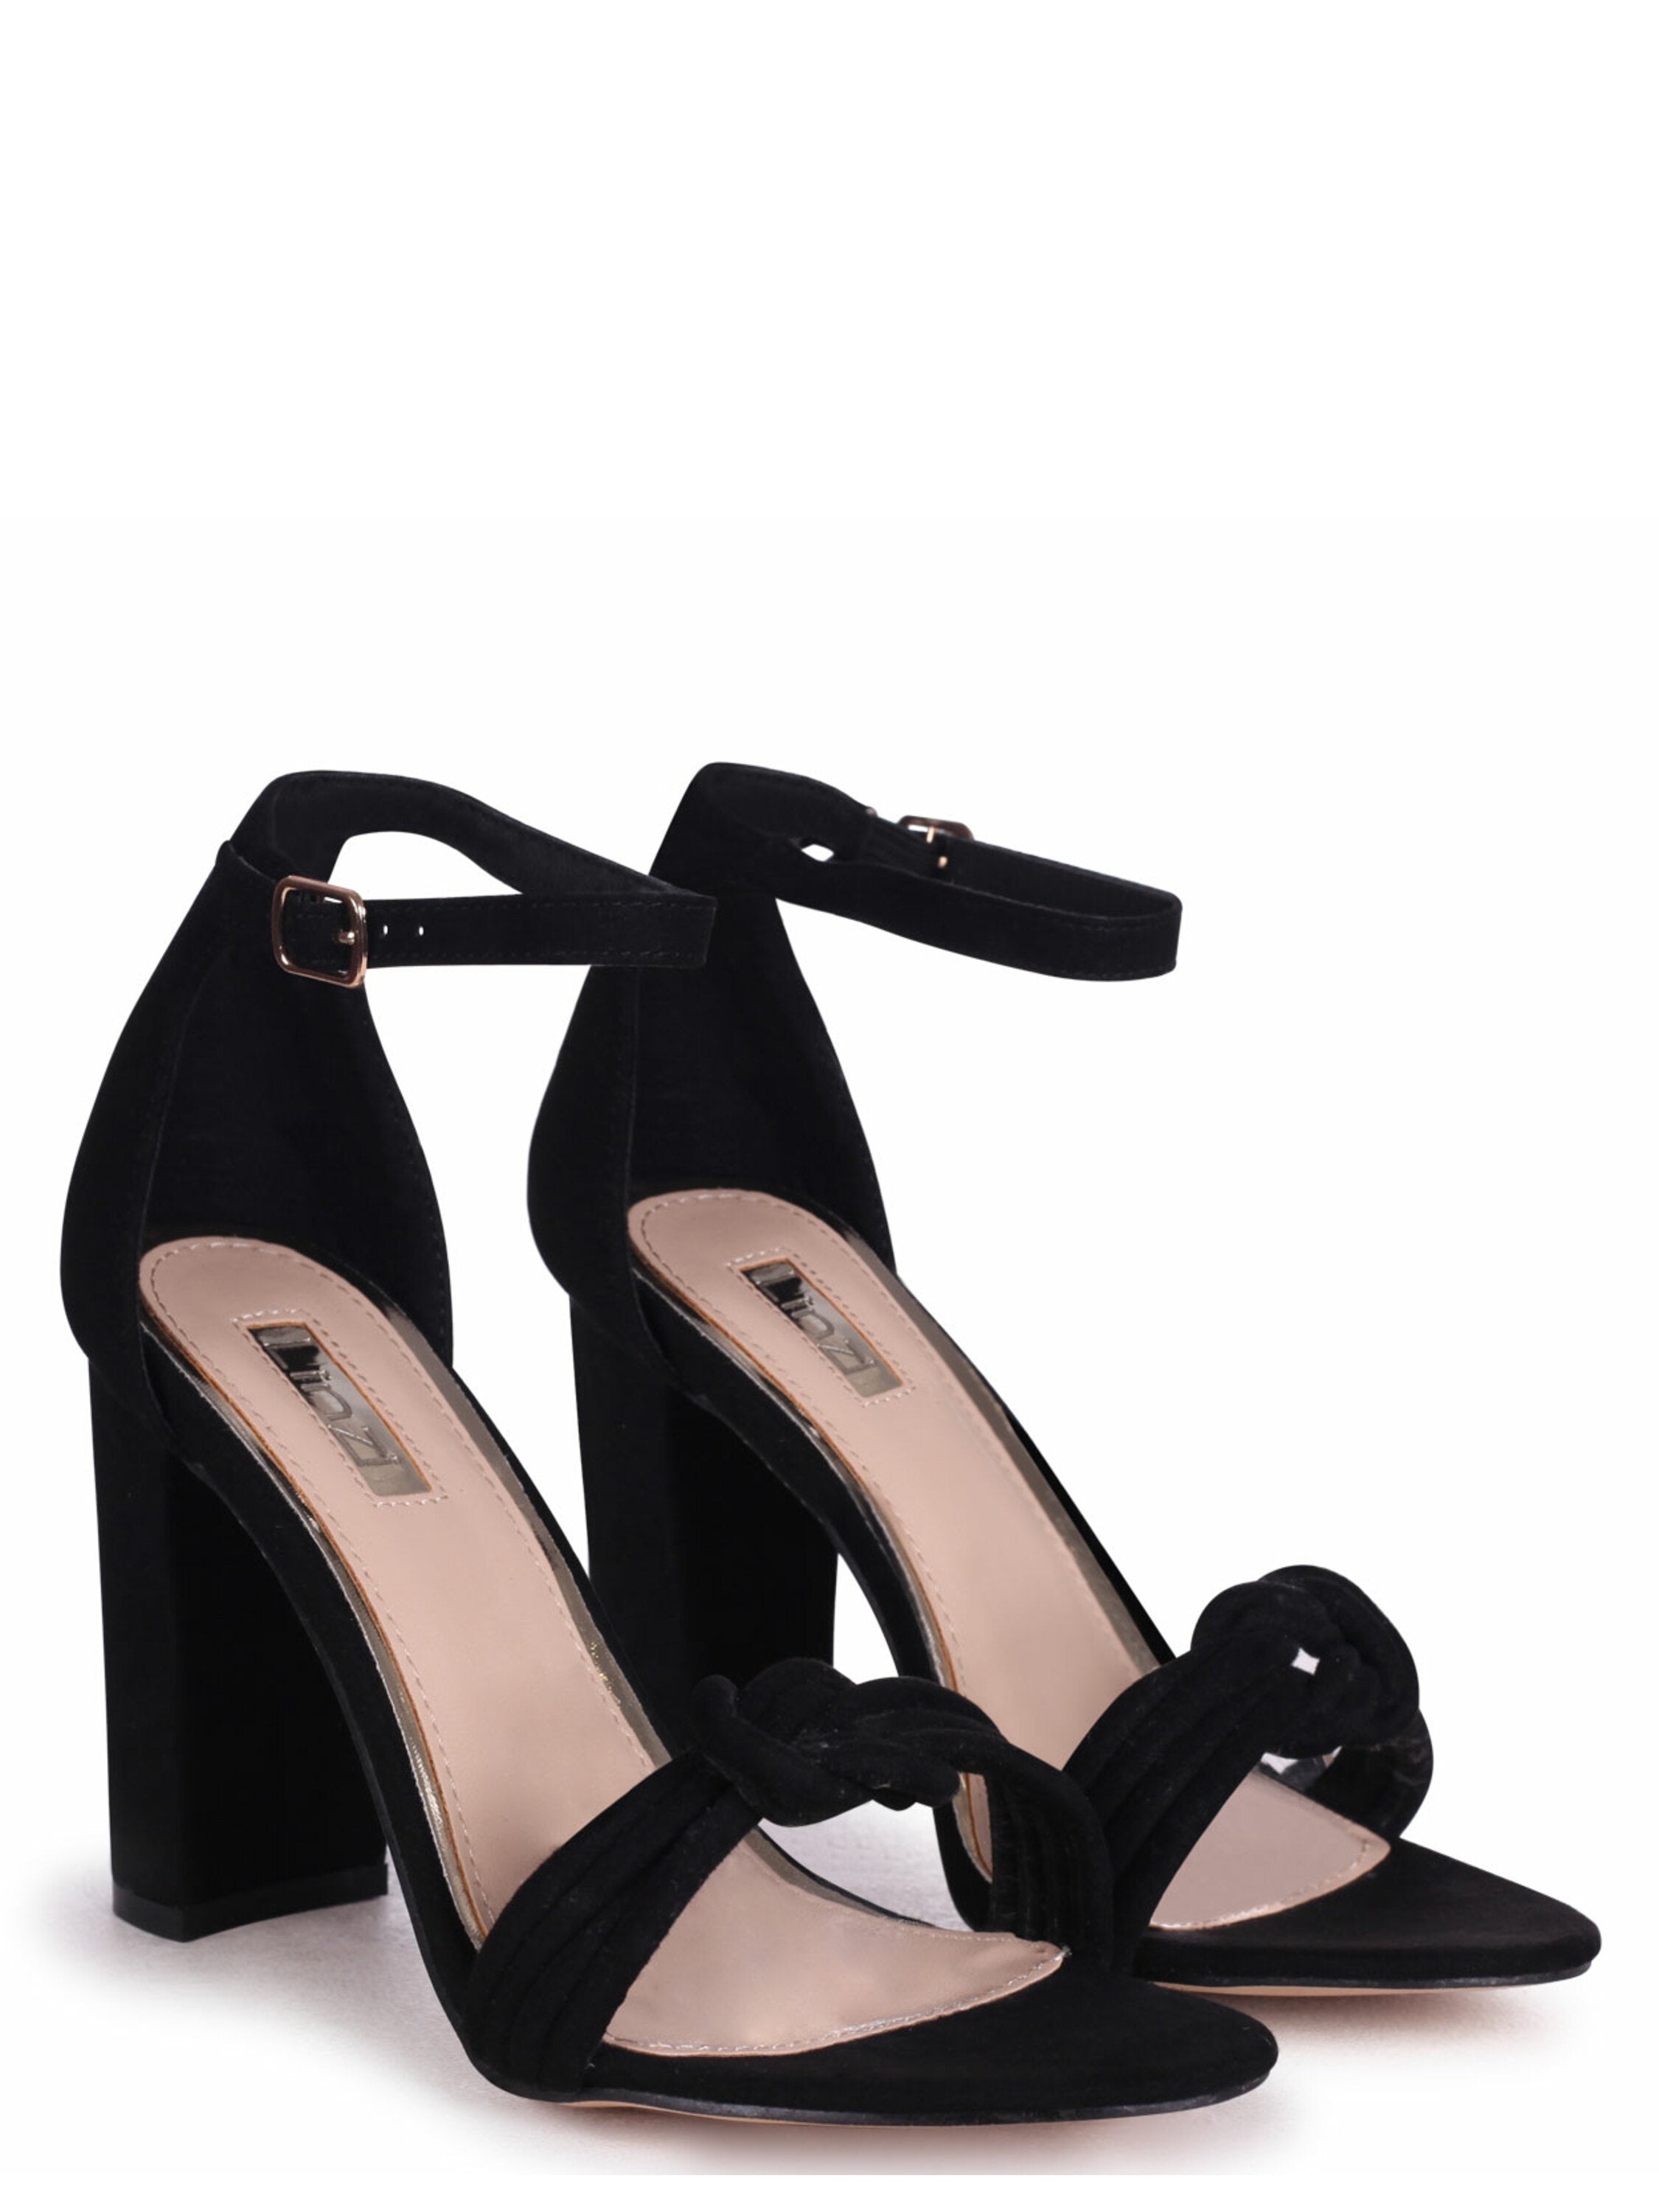 Kallisté - Black suede sandal 12 cm heel.